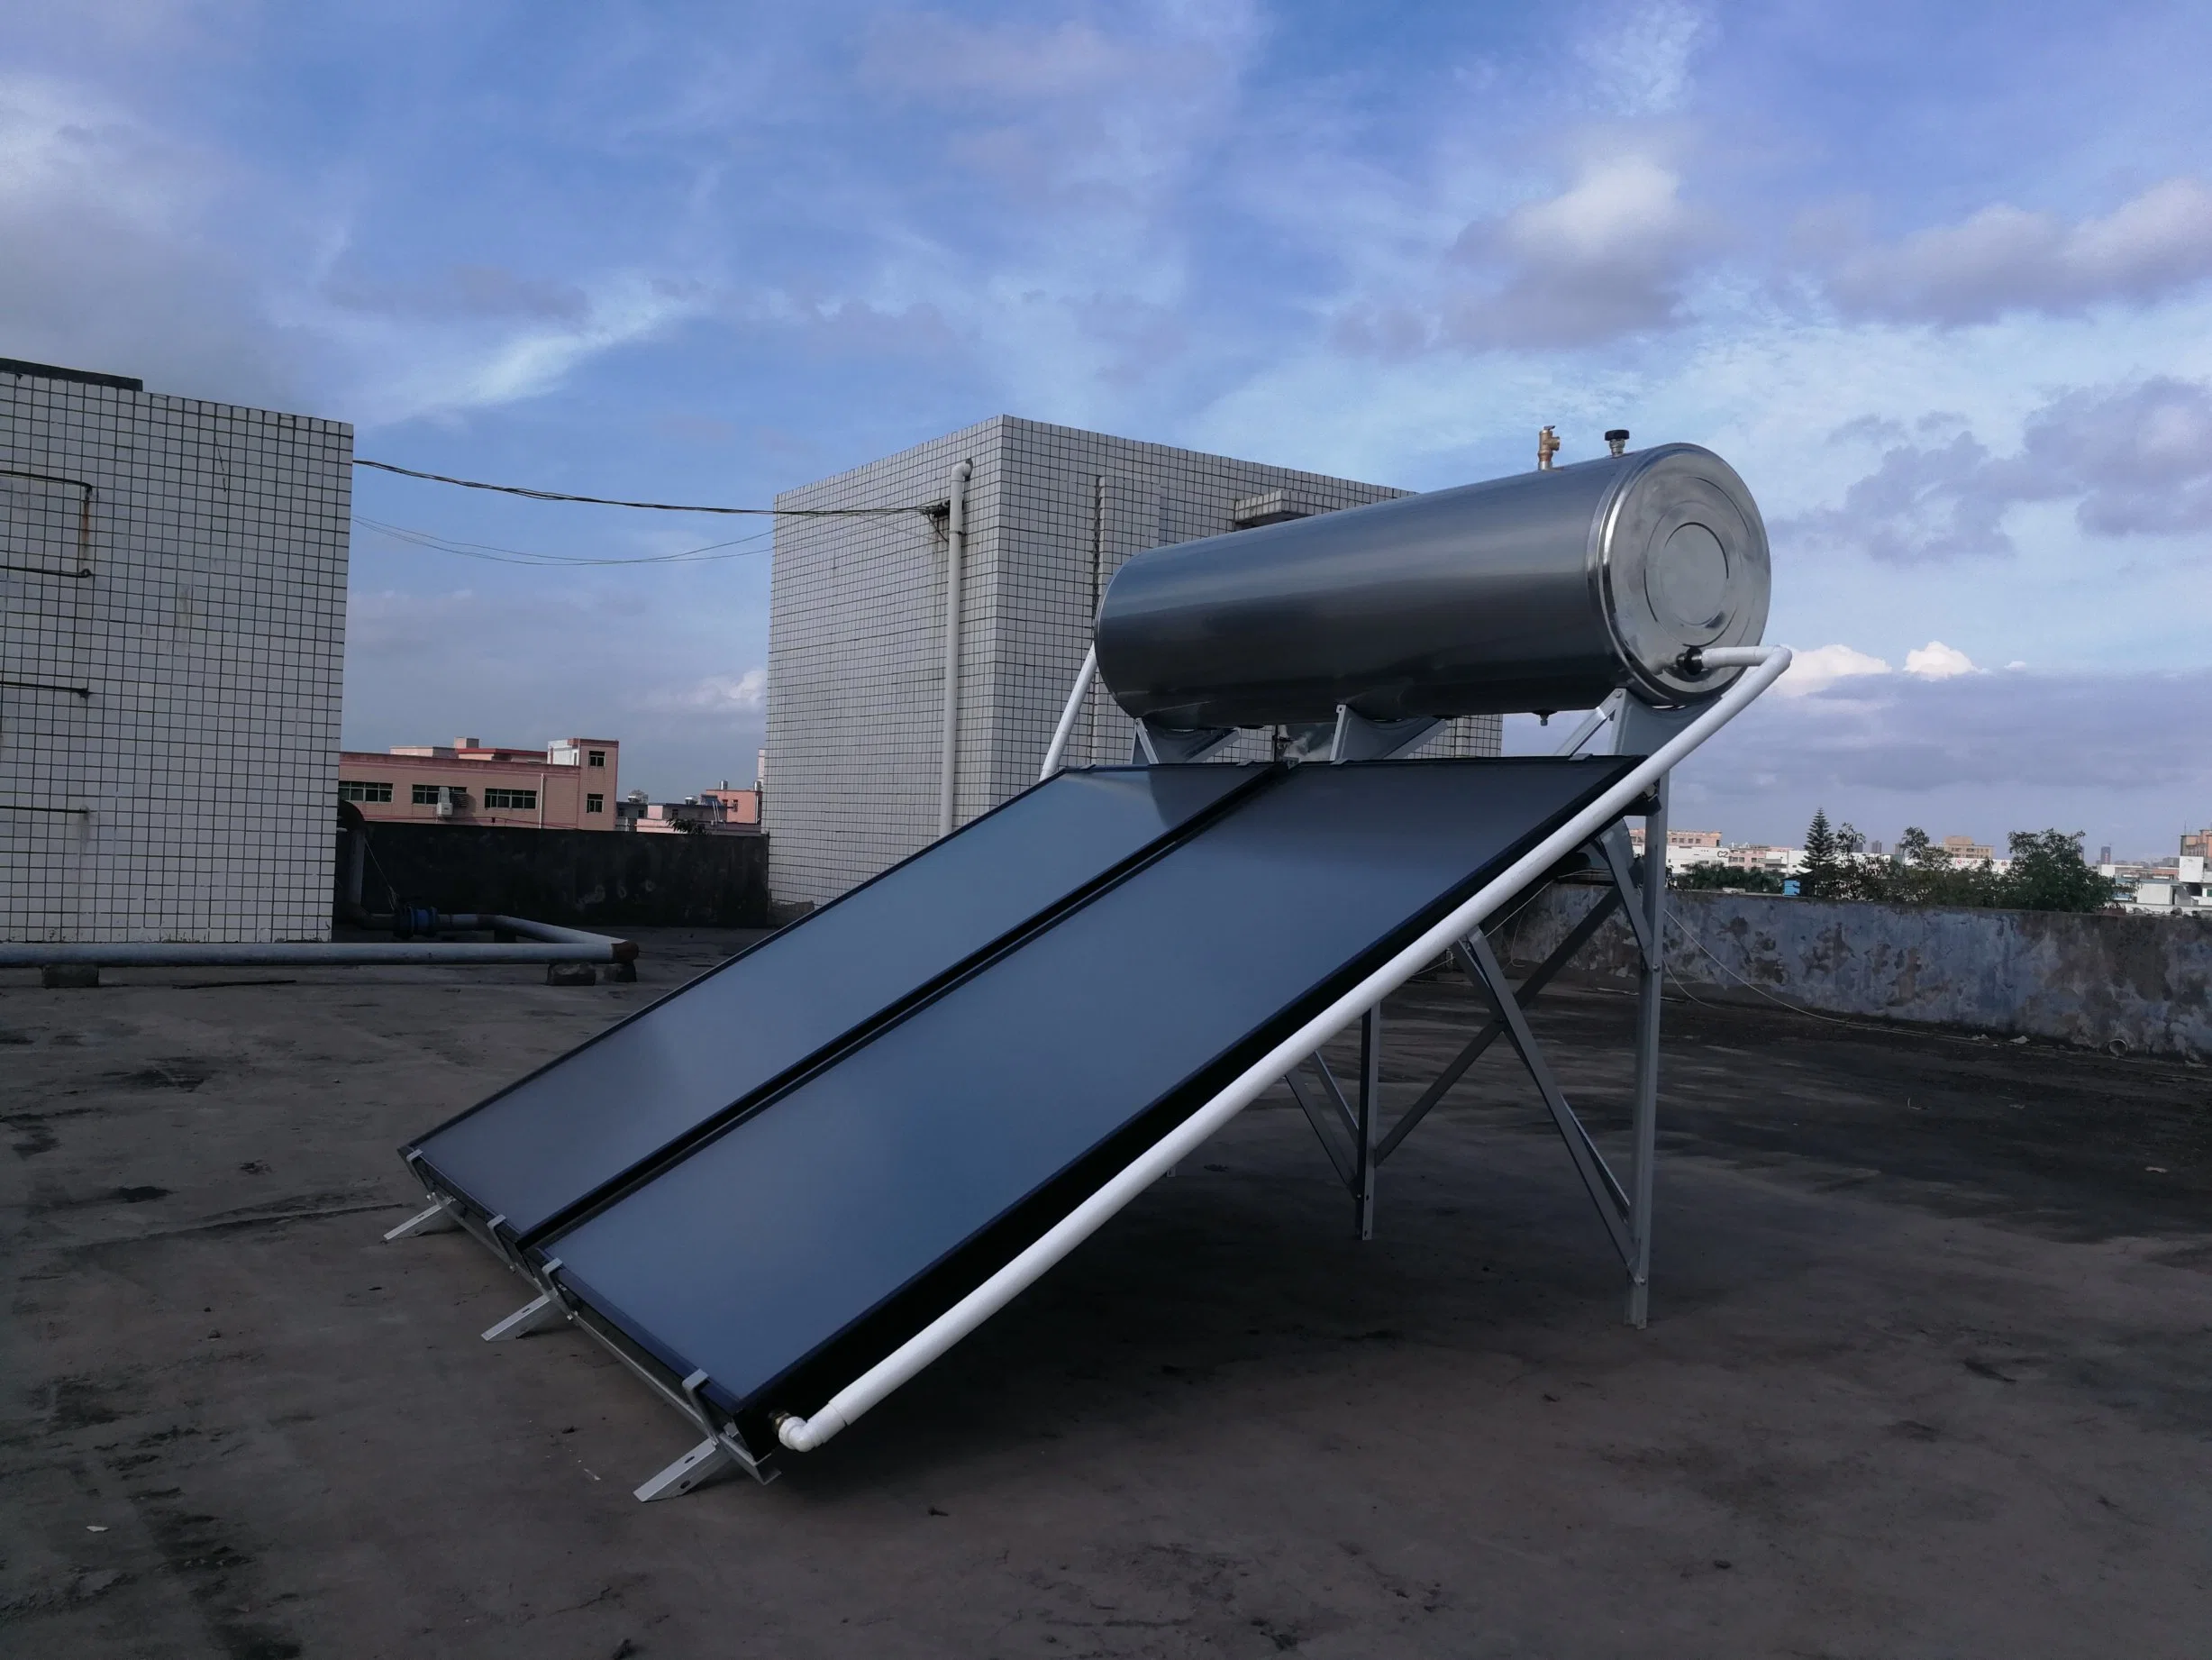 Высокое качество солнечный водонагреватель нержавеющая сталь с солнечной резервуар для хранения и плоские плиты коллектора